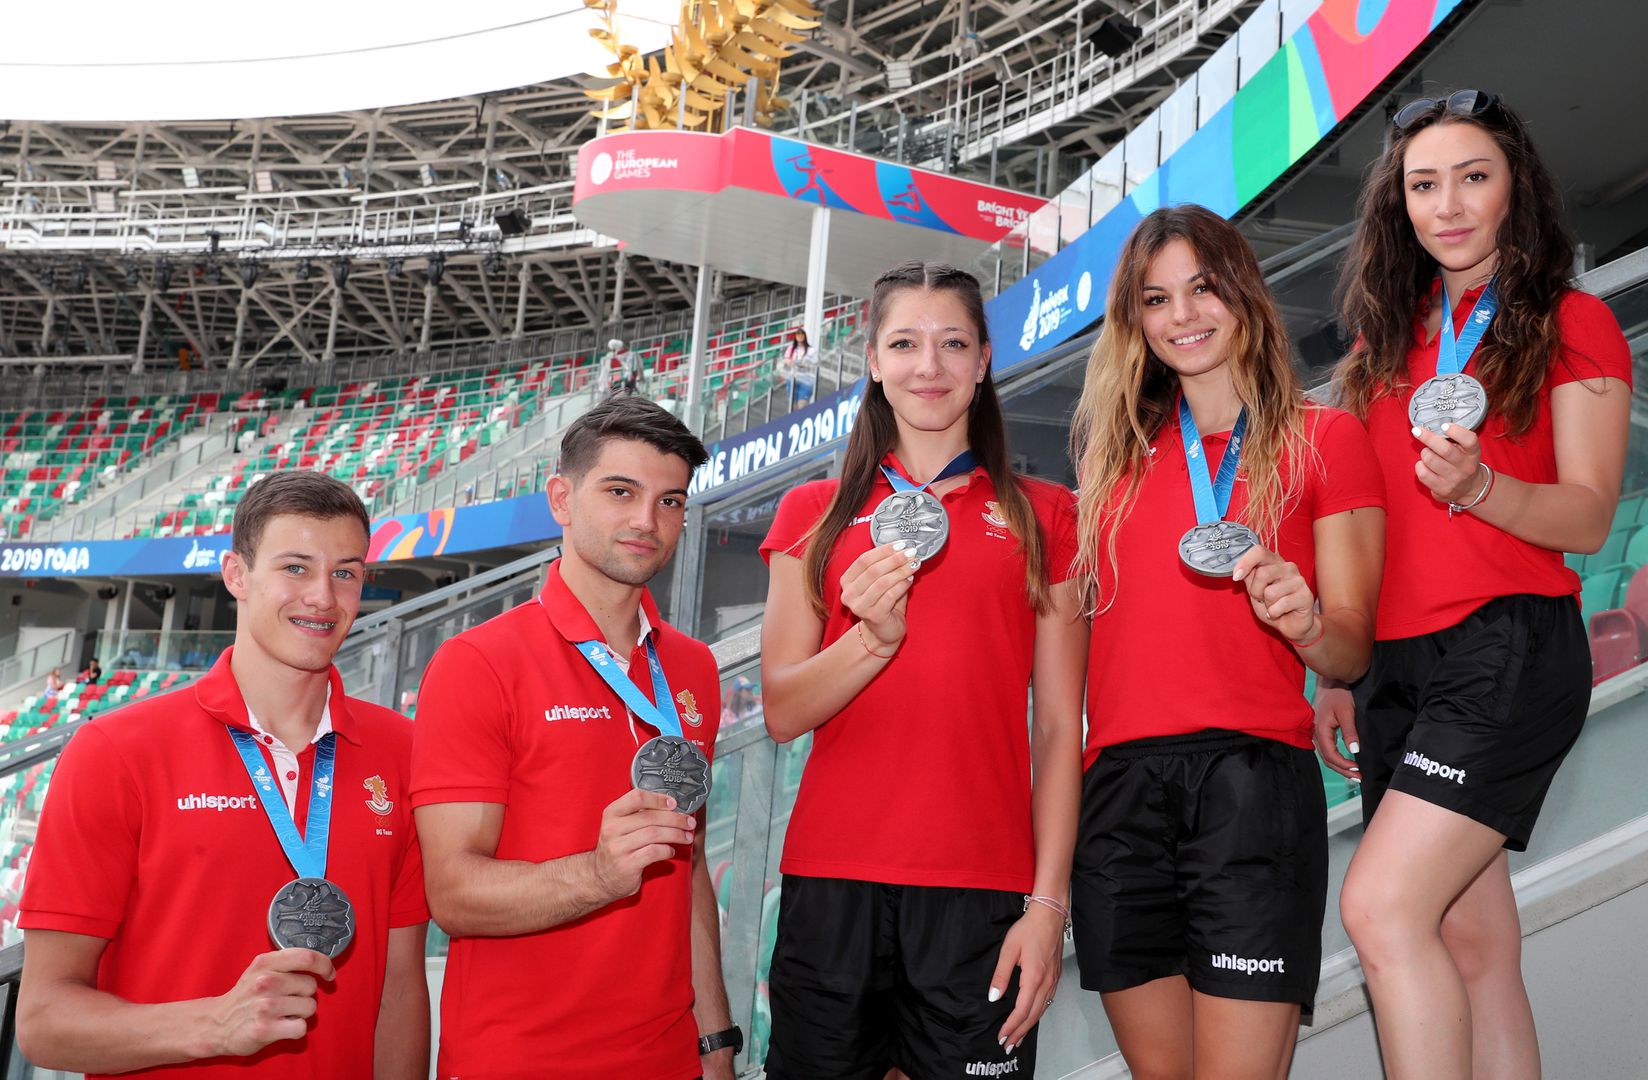 Десети медал за България от Европейските игри в Минск